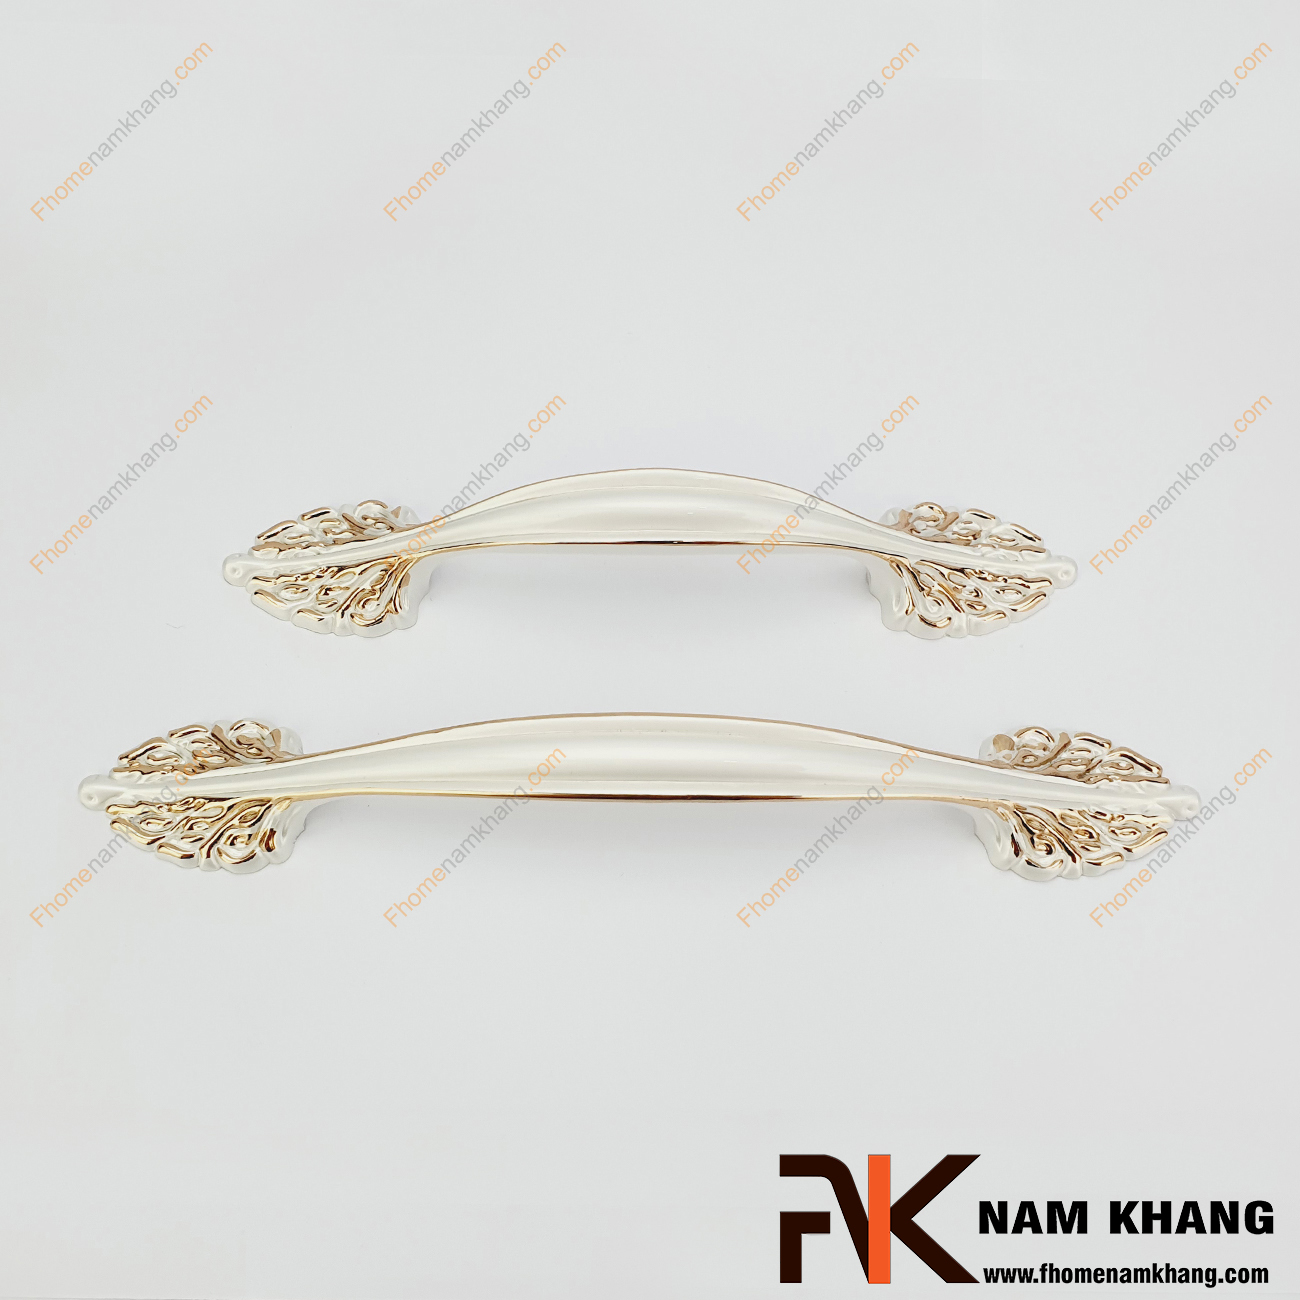 Tay nắm tủ trắng viền vàng NK042M-TV là dạng tay nắm tủ phong cách cổ điển & tân cổ điển với các đường nét đối xứng thân tay nắm.